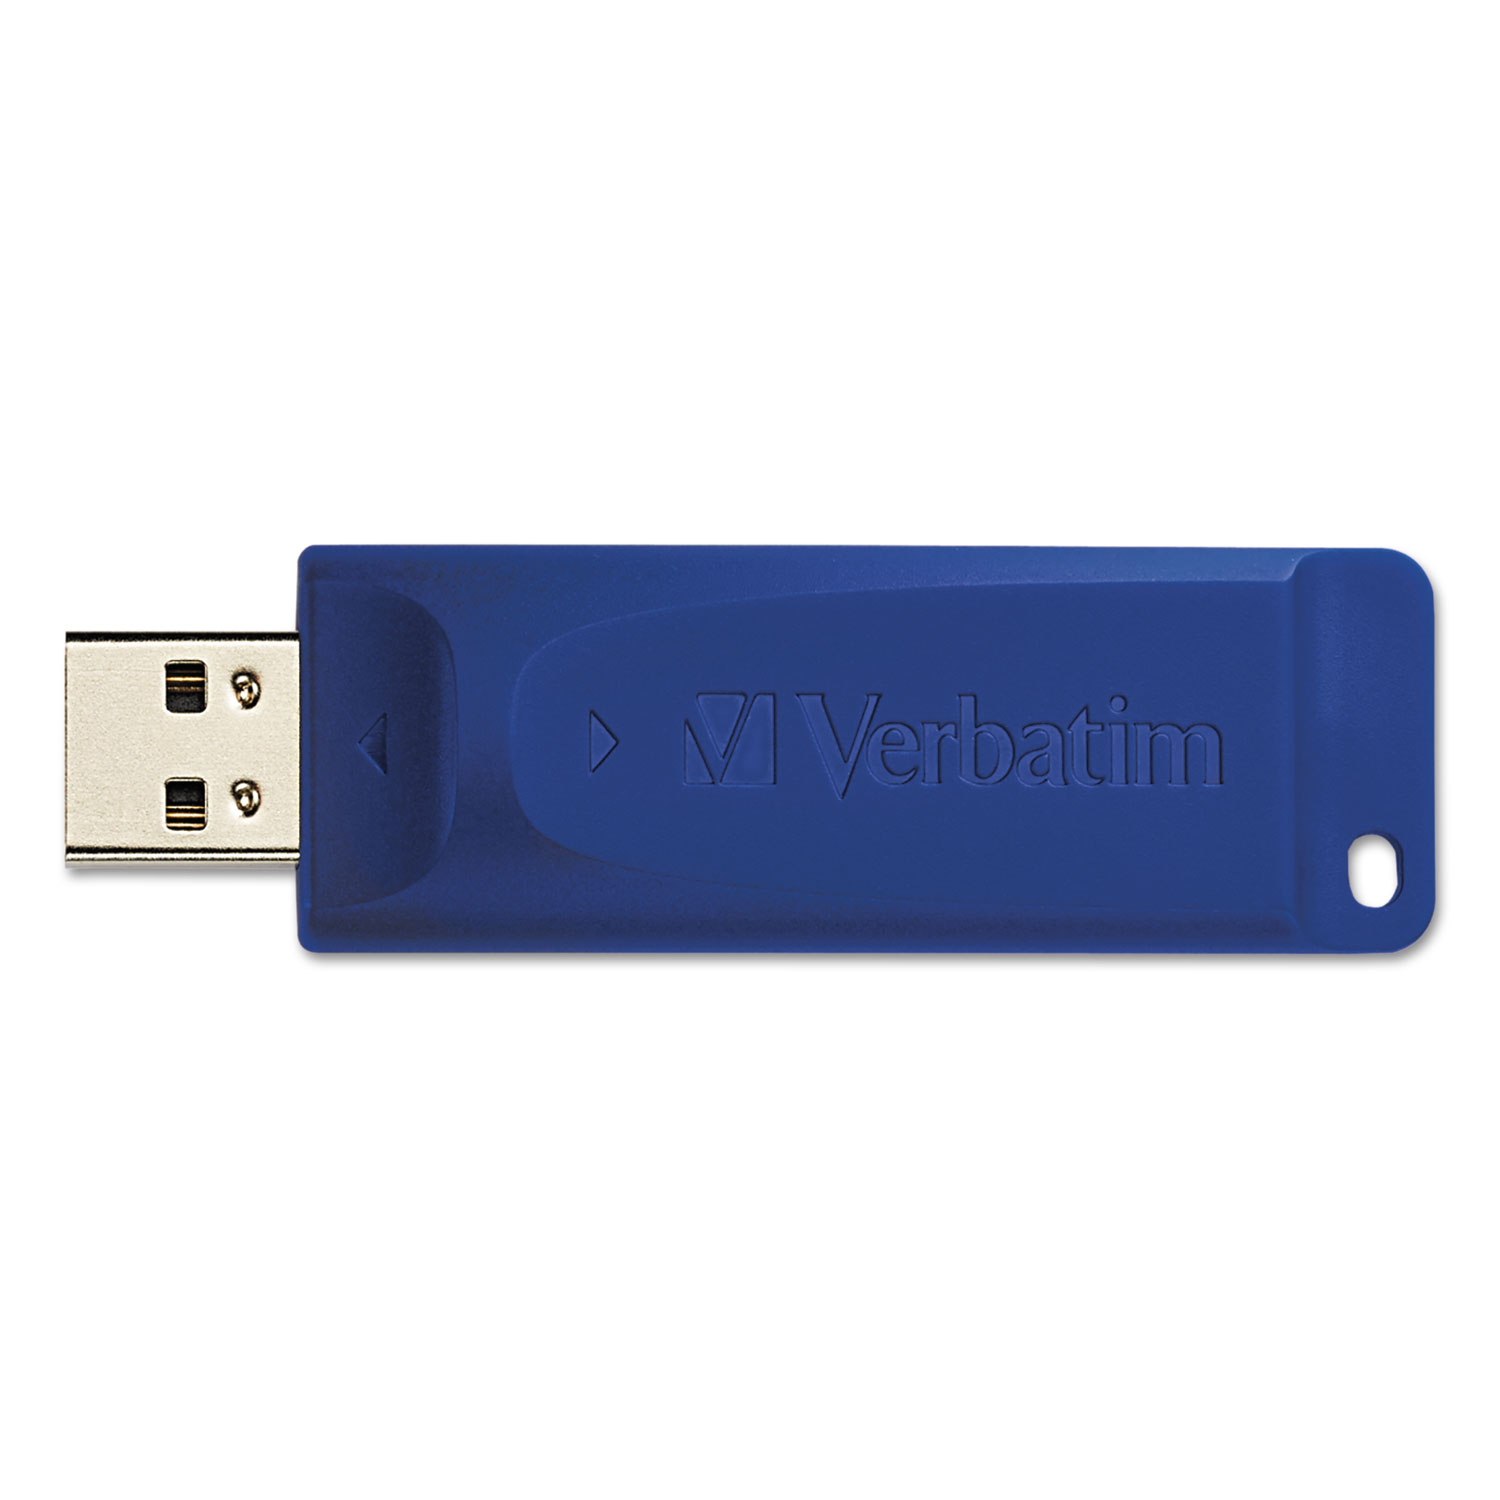 Classic USB 2.0 Flash Drive, 32GB, Blue